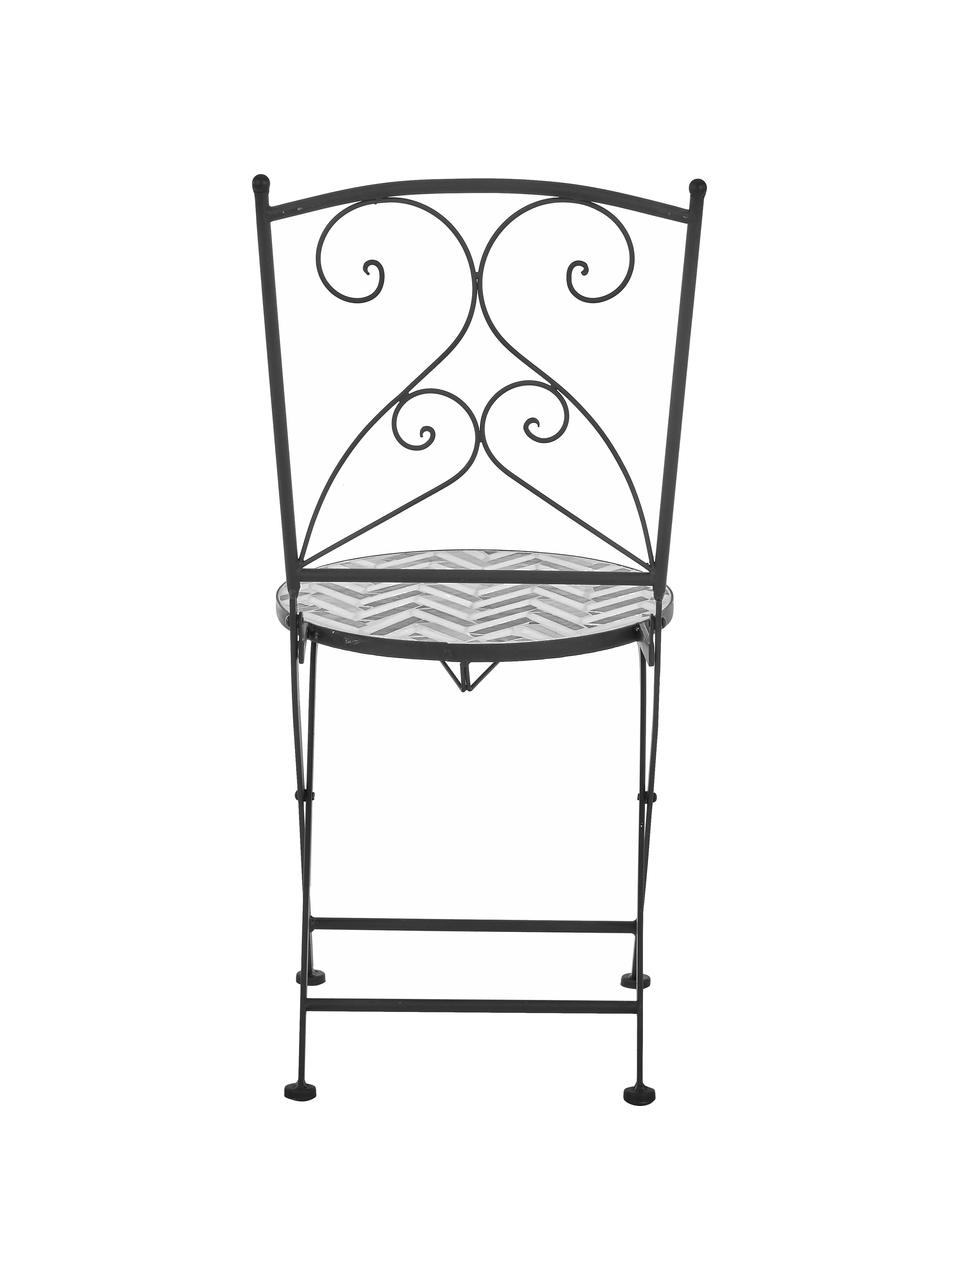 Balkonová židle s mozaikou Verano, 2 ks, Šedá, bílá, černá